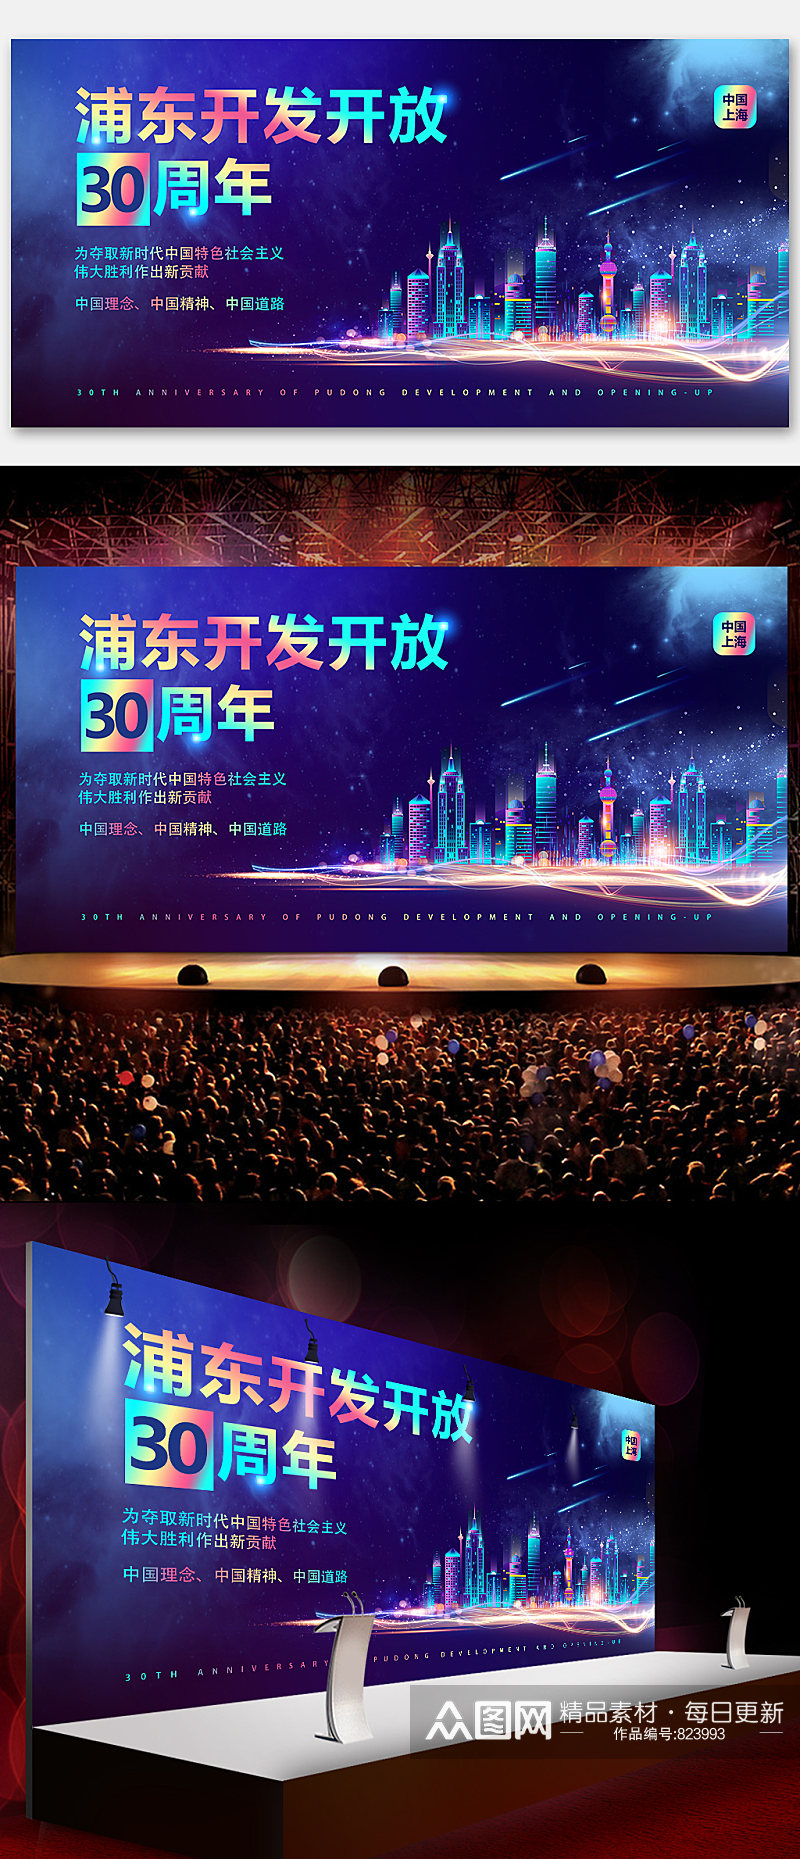 企业浦东开发开放30周年海报背景展板素材